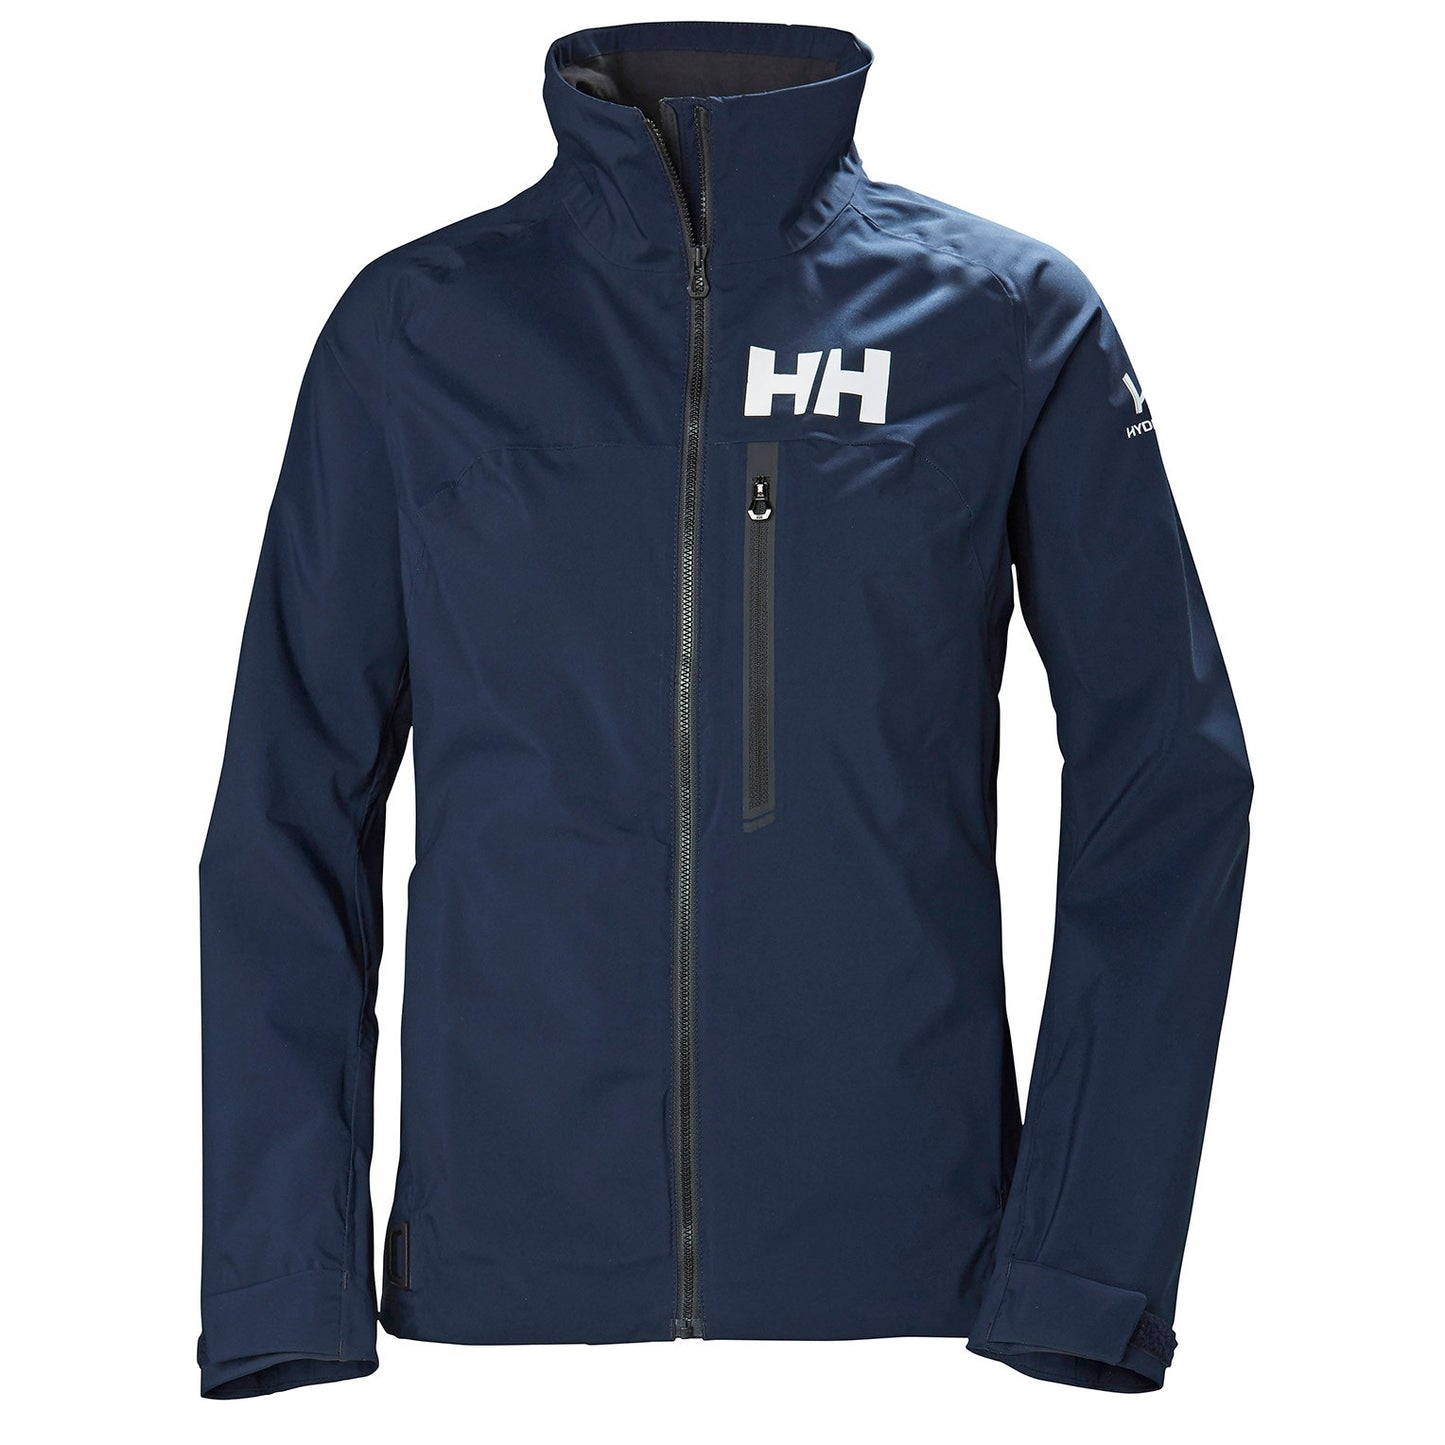 Helly Hansen Women's Racing Jacket